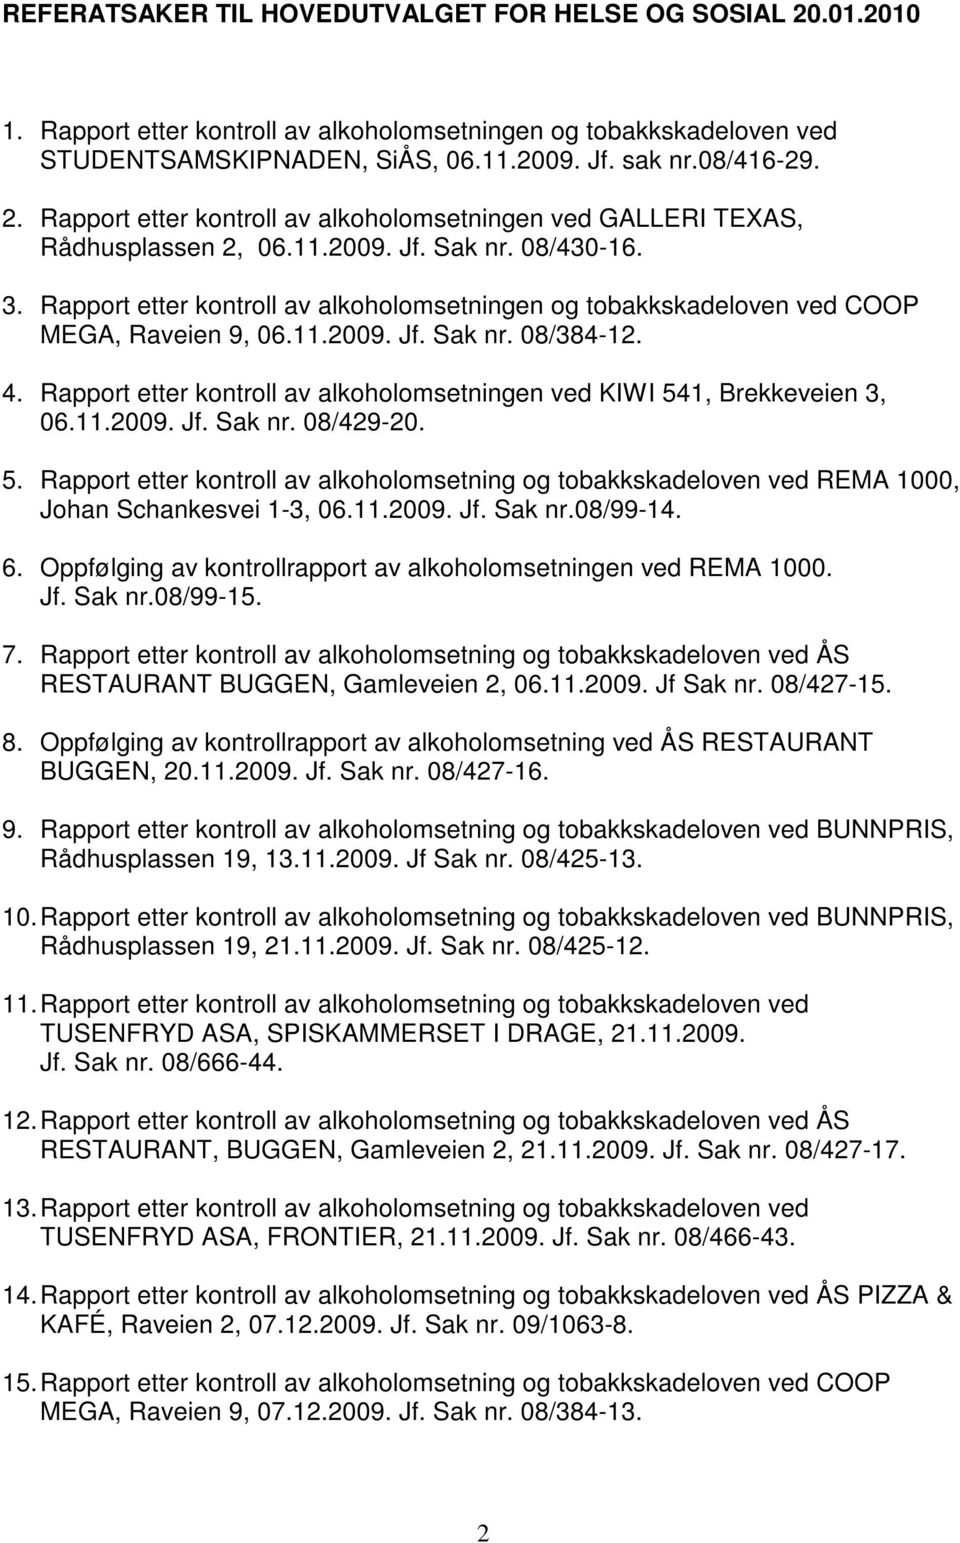 Rapport etter kontroll av alkoholomsetningen ved KIWI 541, Brekkeveien 3, 06.11.2009. Jf. Sak nr. 08/429-20. 5. Rapport etter kontroll av alkoholomsetning og tobakkskadeloven ved REMA 1000, Johan Schankesvei 1-3, 06.